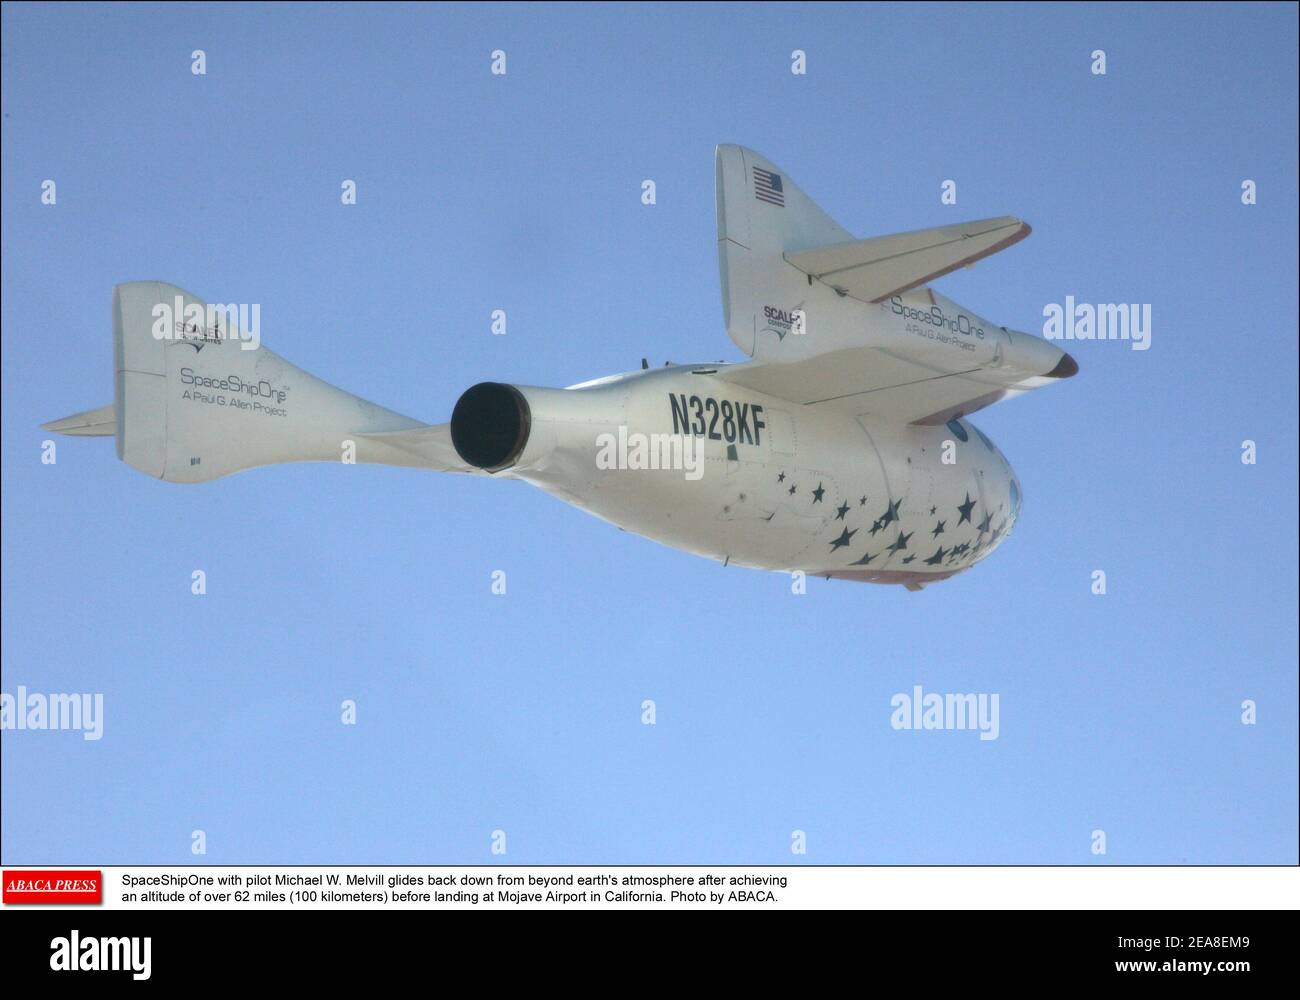 SpaceShipOne avec le pilote Michael W. Melvill glisse en arrière de l'atmosphère au-delà de la terre après avoir atteint une altitude de plus de 62 miles (100 kilomètres) avant d'atterrir à l'aéroport de Mojave en Californie. Photo par ABACA. Banque D'Images